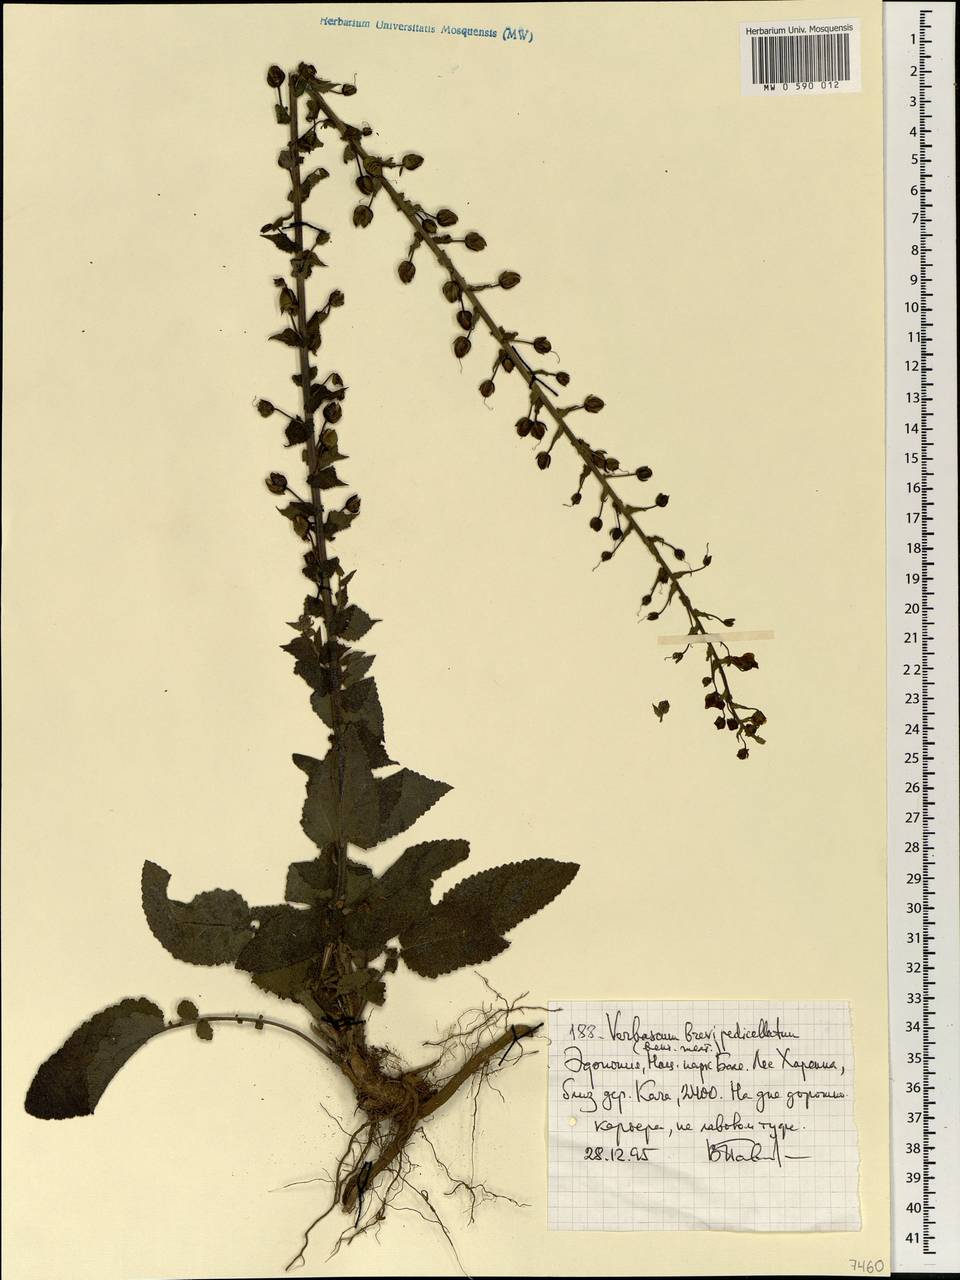 Verbascum brevipedicellatum (Engl.) Hub.-Mor., Africa (AFR) (Ethiopia)